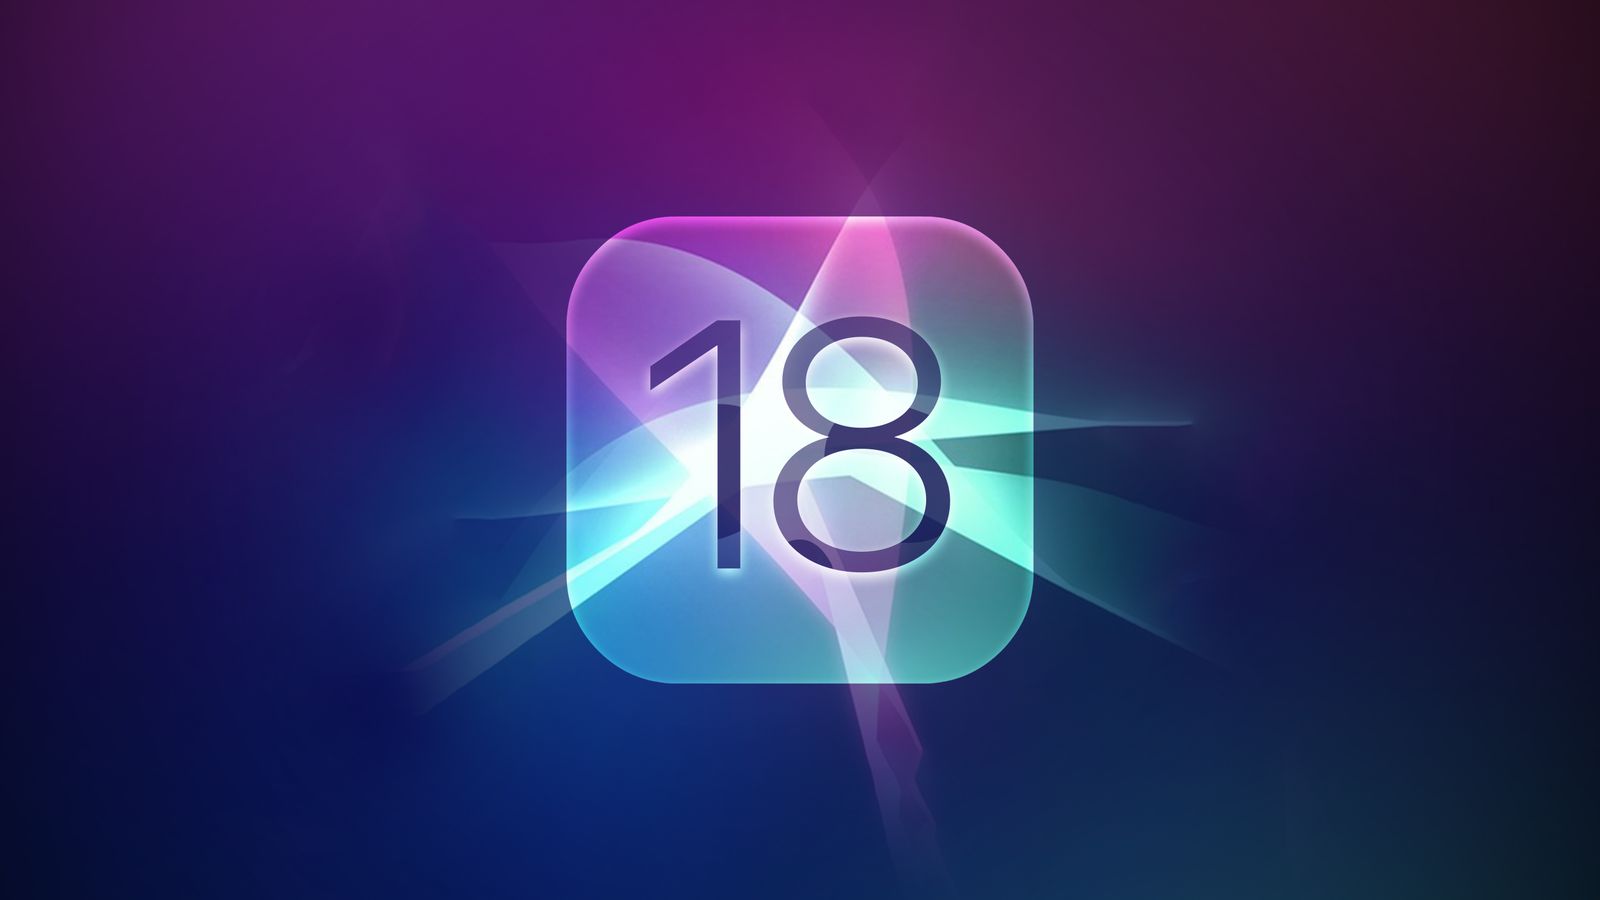 iPhoneIslam.com سے، 18-12 اپریل 18 کے ہفتے کے دوران ہلکے بھڑکتے ہوئے جامنی، نیلے اور گلابی ٹونز کو ملاتے ہوئے، چمکتے ہوئے ایپ آئیکن کے ساتھ ایک تجریدی وال پیپر نمبر 2023 دکھا رہا ہے۔